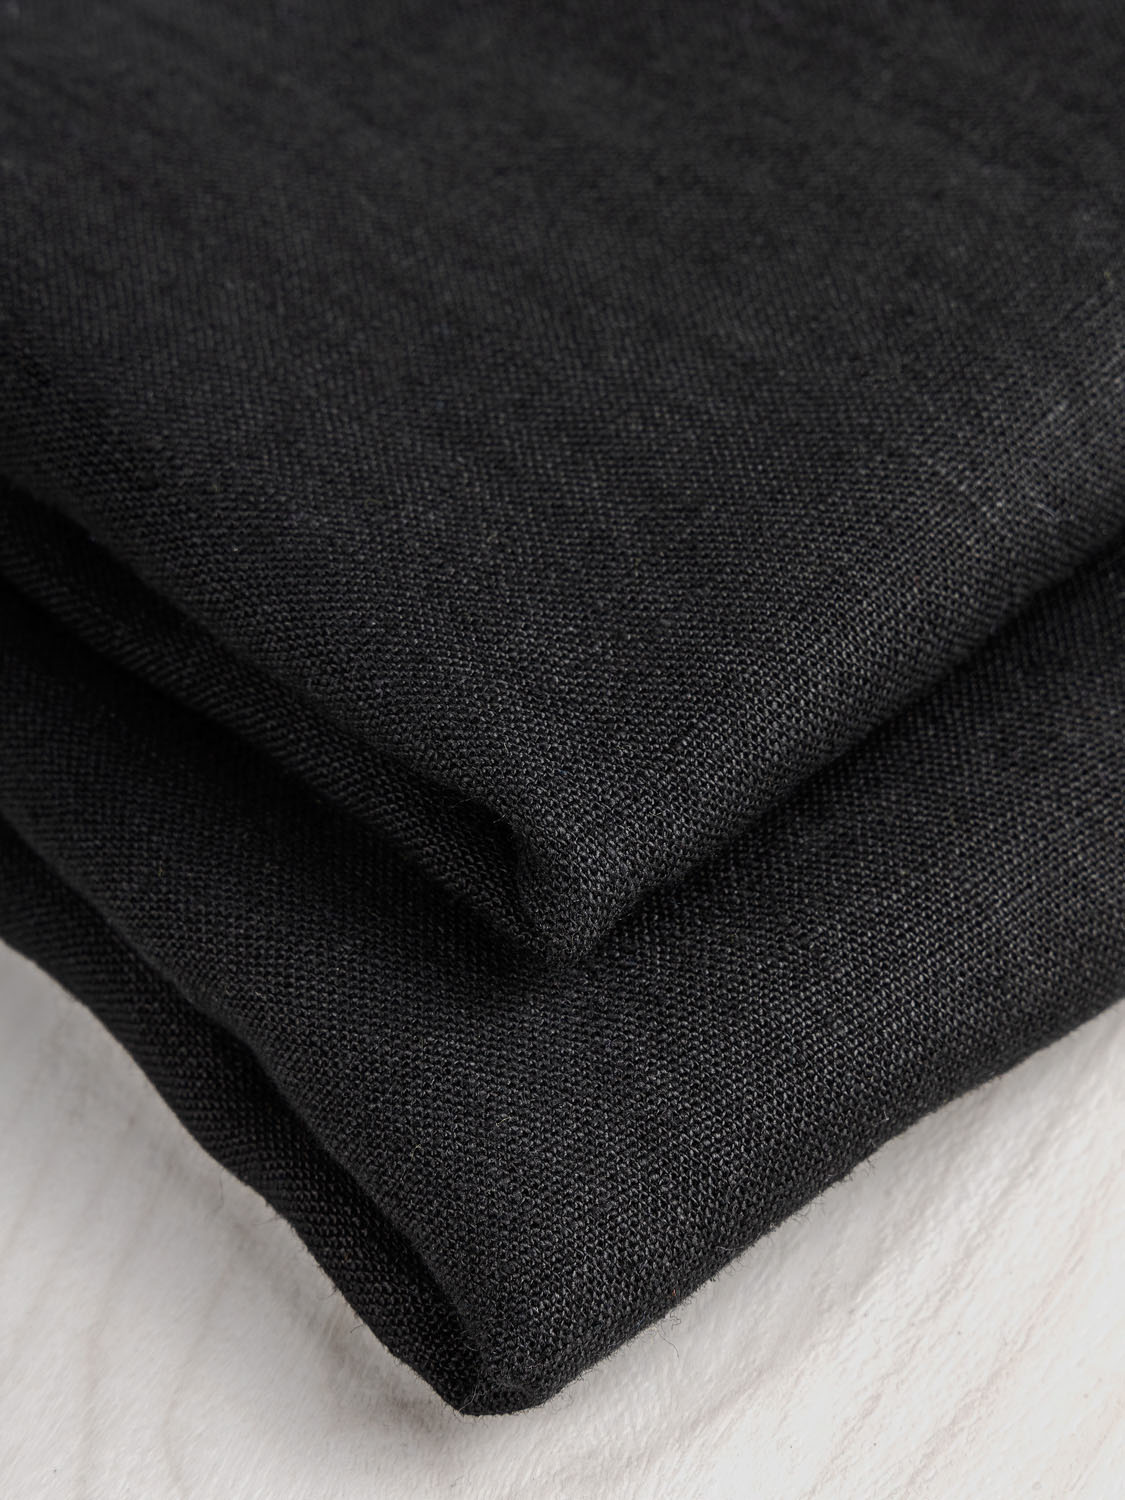 Midweight European Linen - Midnight Black | Core Fabrics